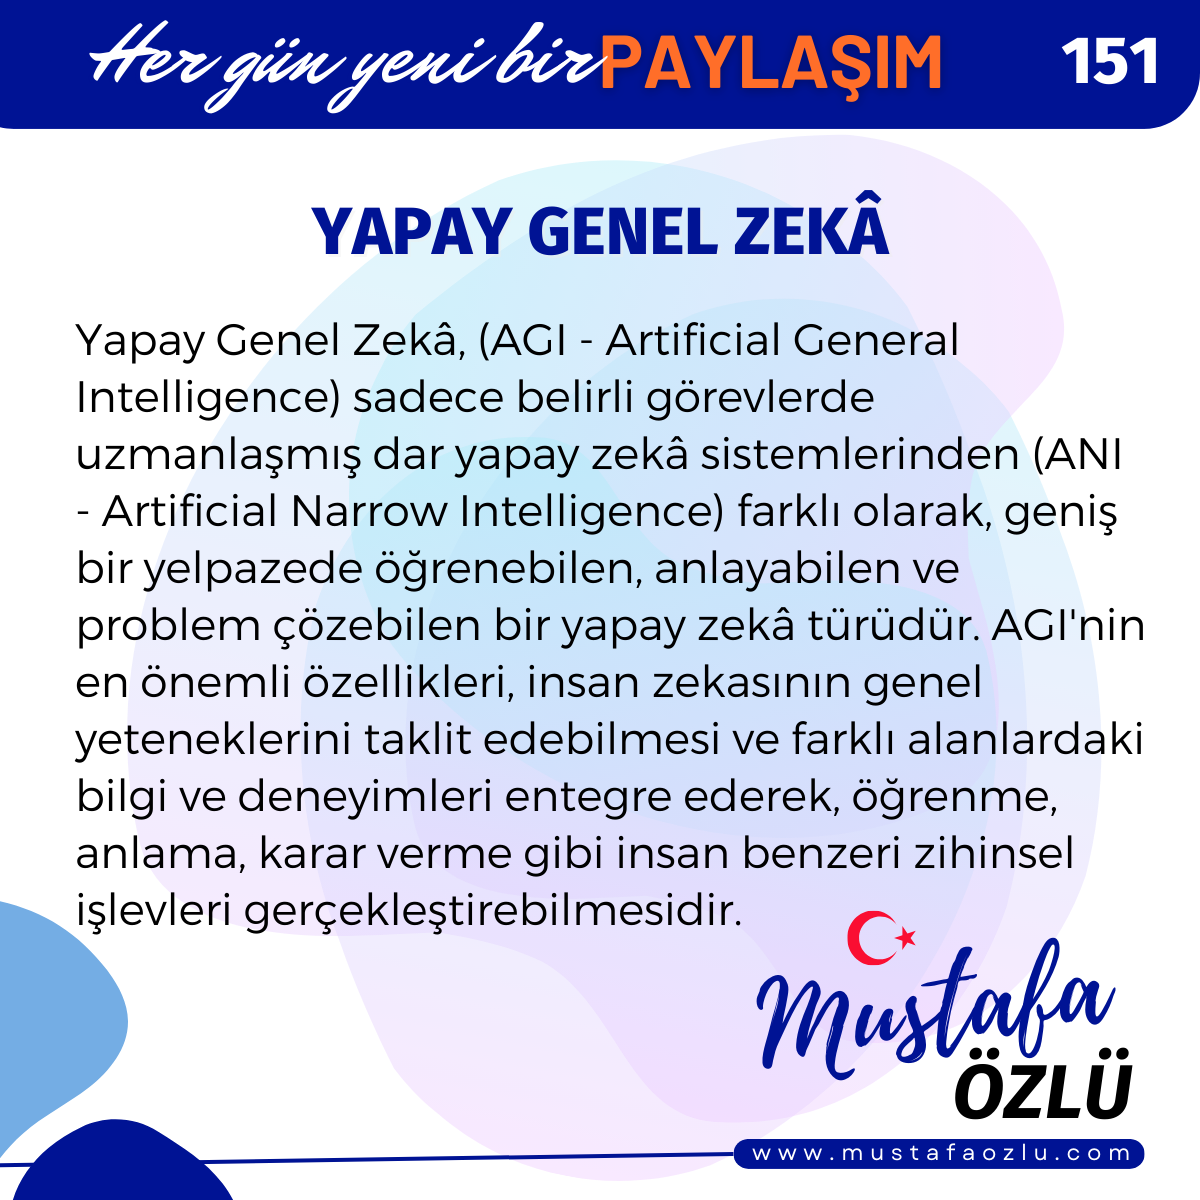 Yapay Genel Zekâ - Mustafa ÖZLÜ